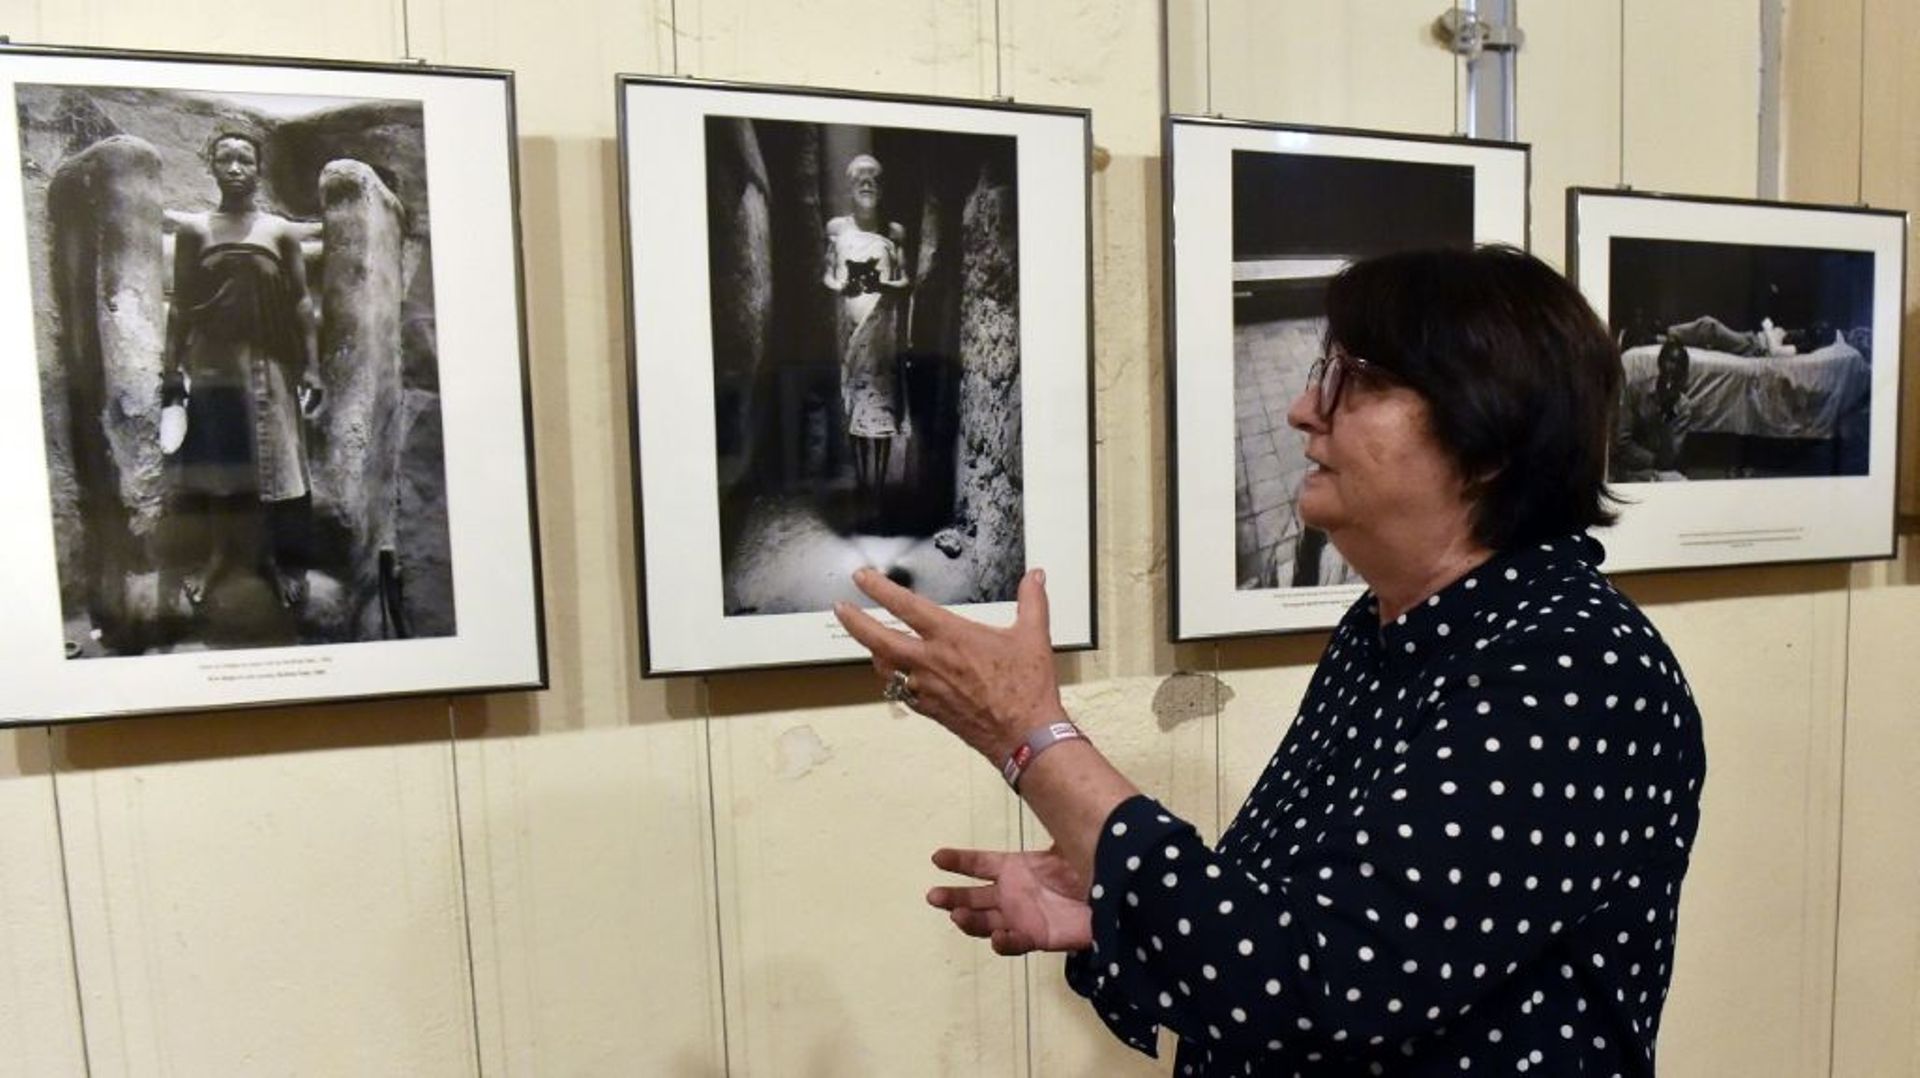 La photographe Françoise Huguier devant les photos de son exposition "Discrétion" au festival Visa pour l’image, le 30 août 2022 à Perpignan